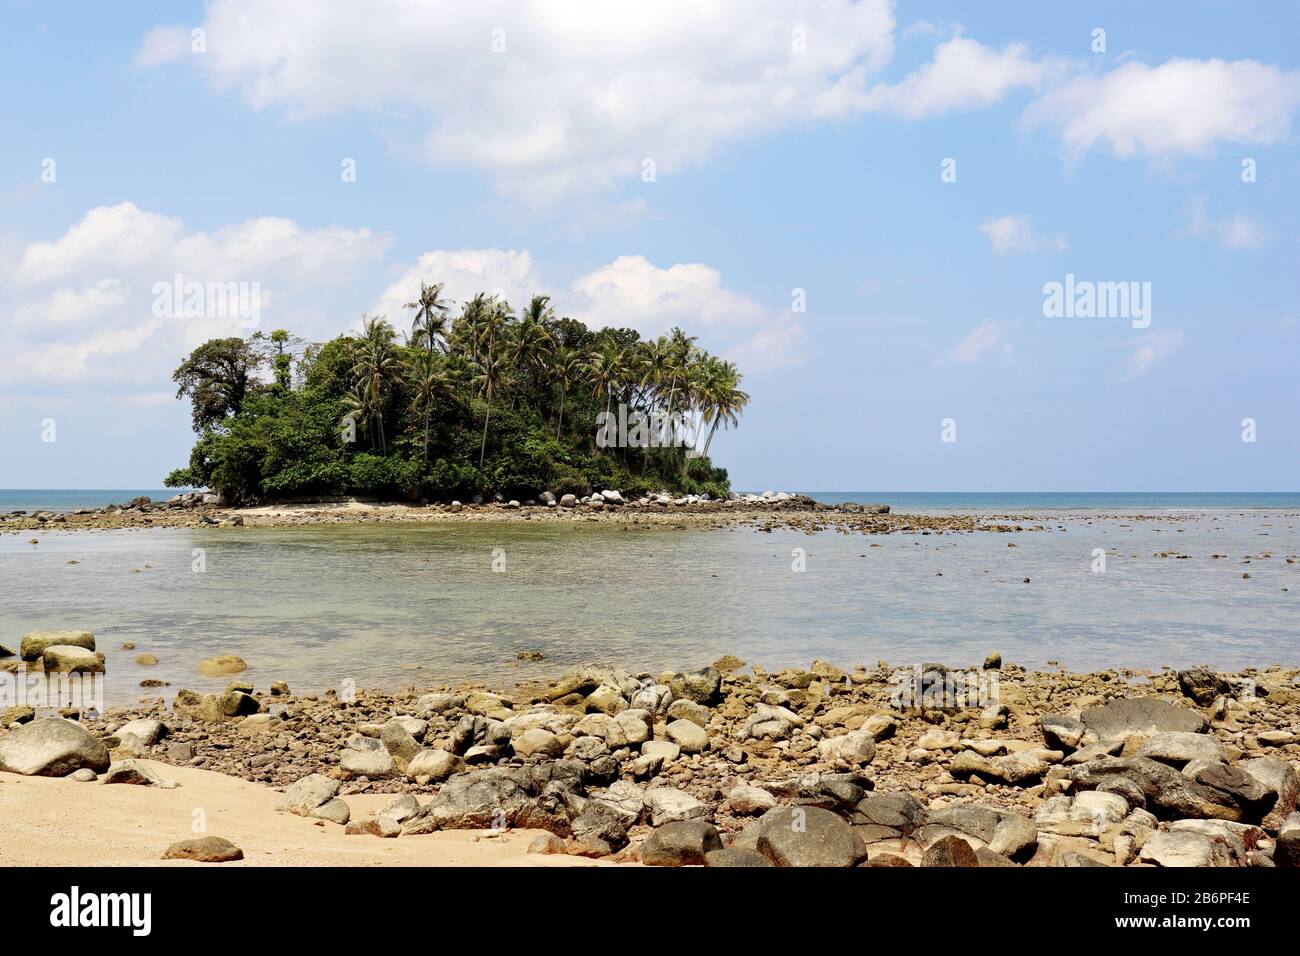 Île tropicale avec palmiers à noix de coco dans un océan, vue pittoresque de la plage avec des rochers. Paysage marin coloré avec ciel bleu et nuages blancs Banque D'Images